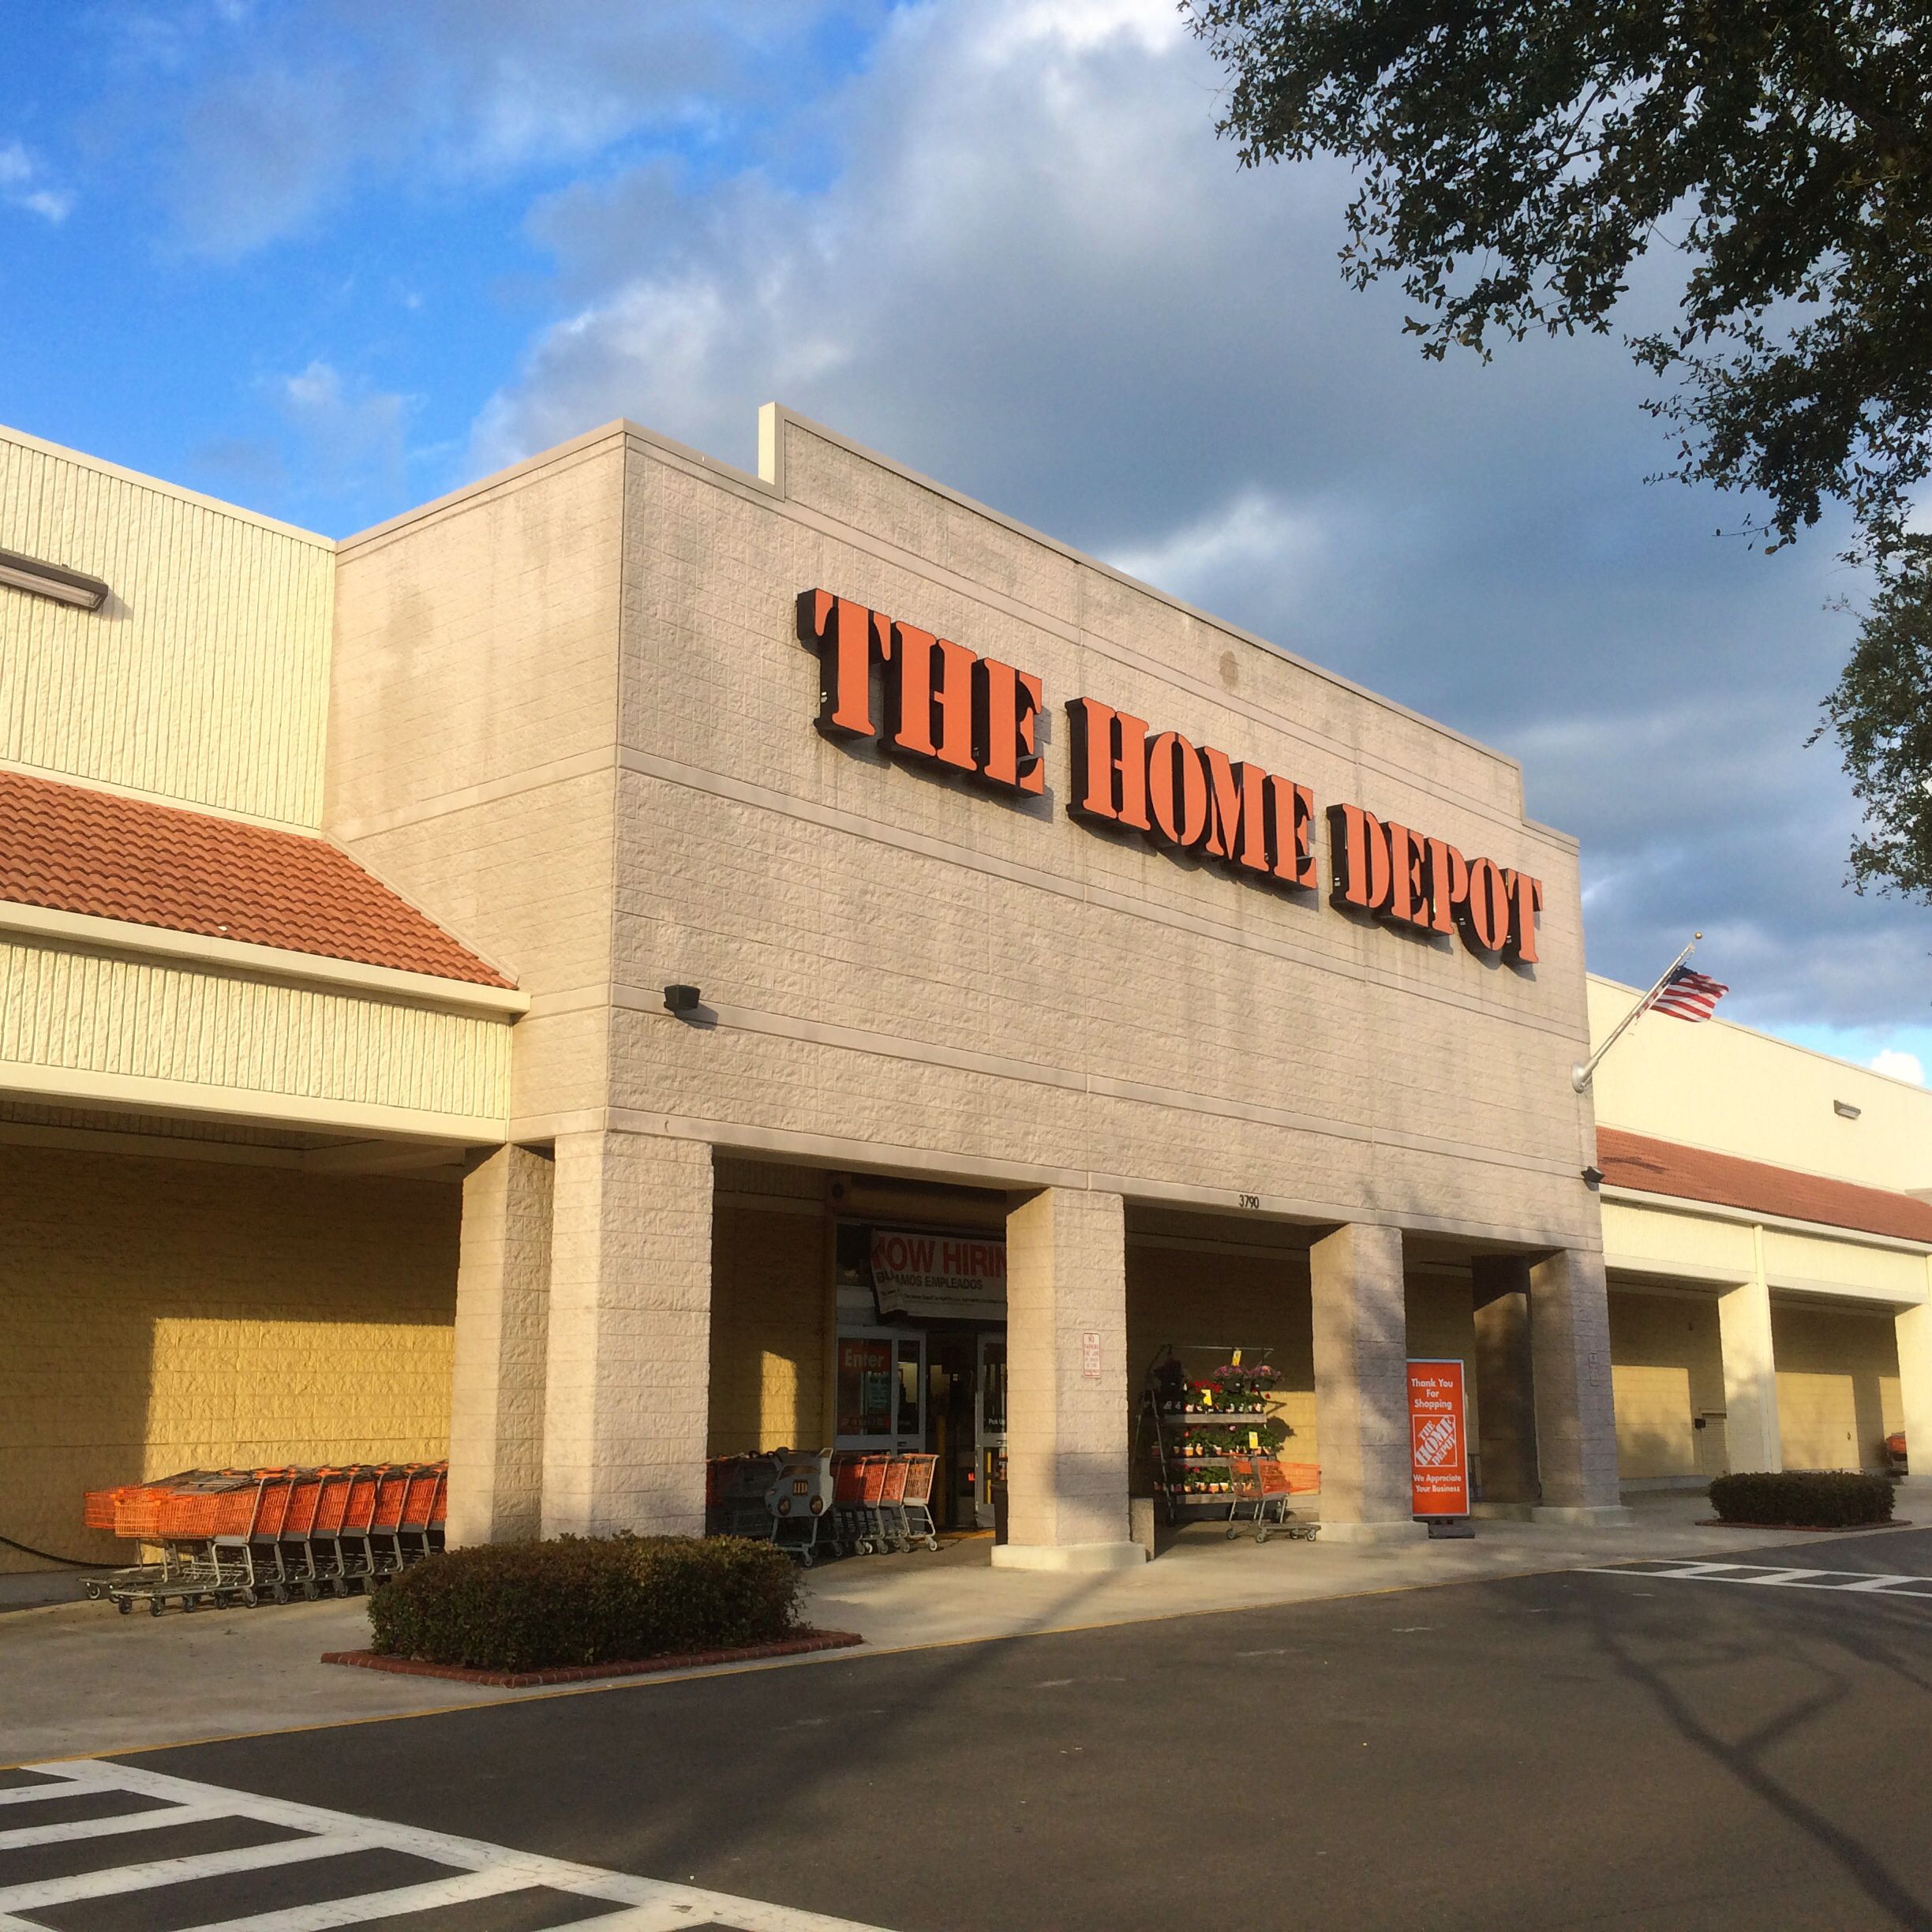 Woman sues Home Depot over fall at store entrance - Atlanta ...